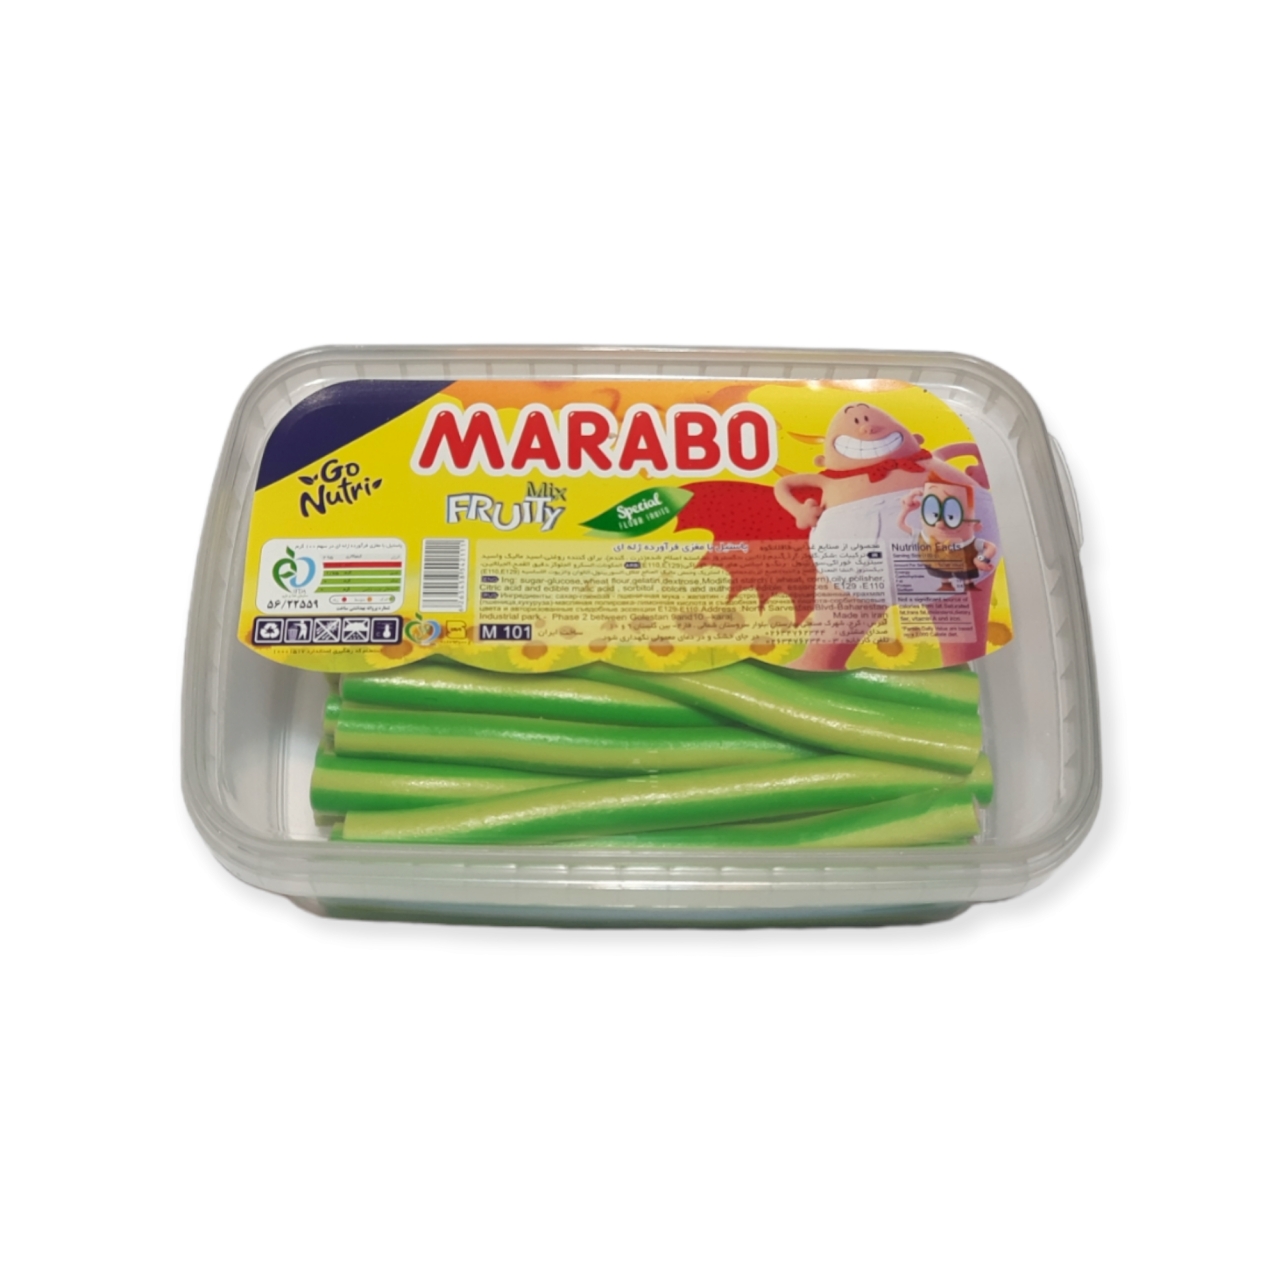 پاستیل لوله ای با طعم هندوانه مارابو - 900 گرم